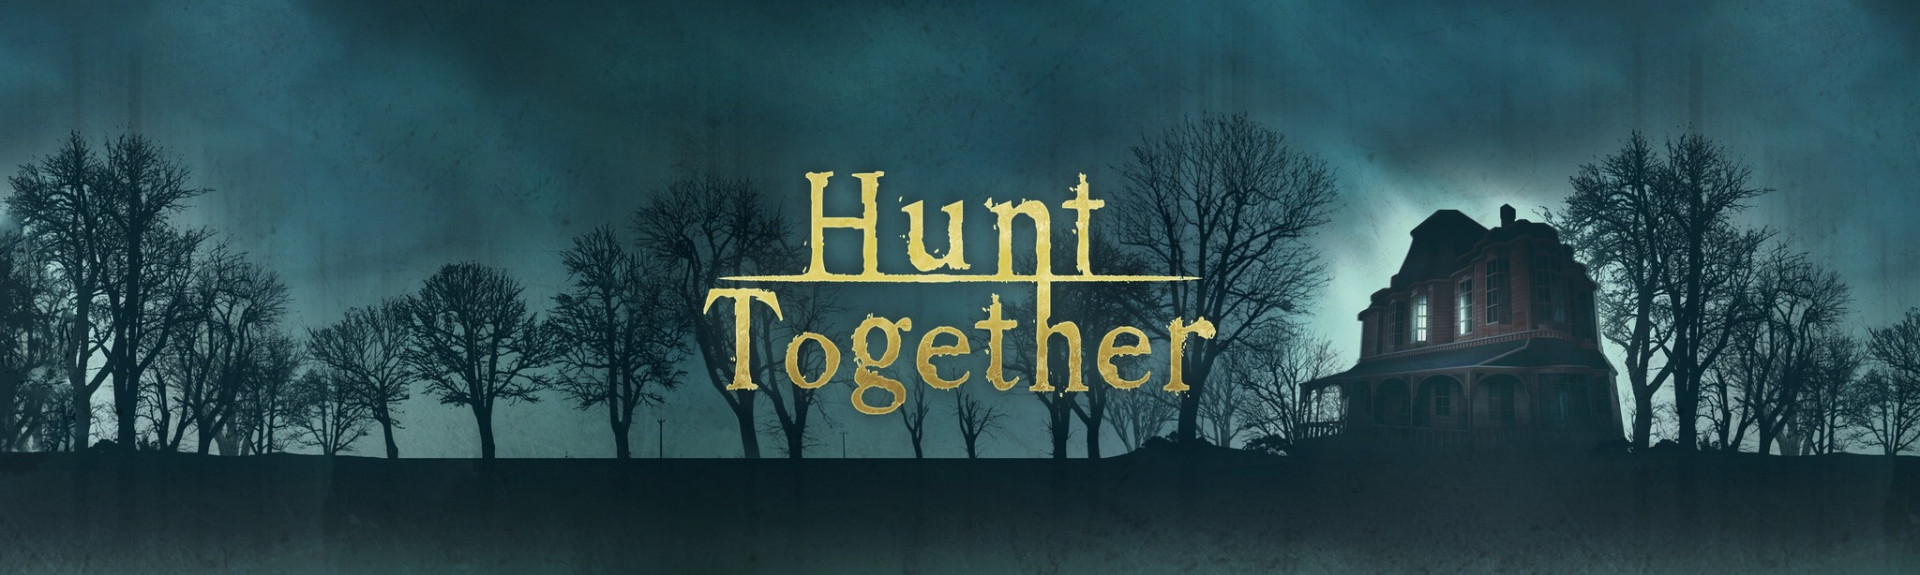 Hunt Together